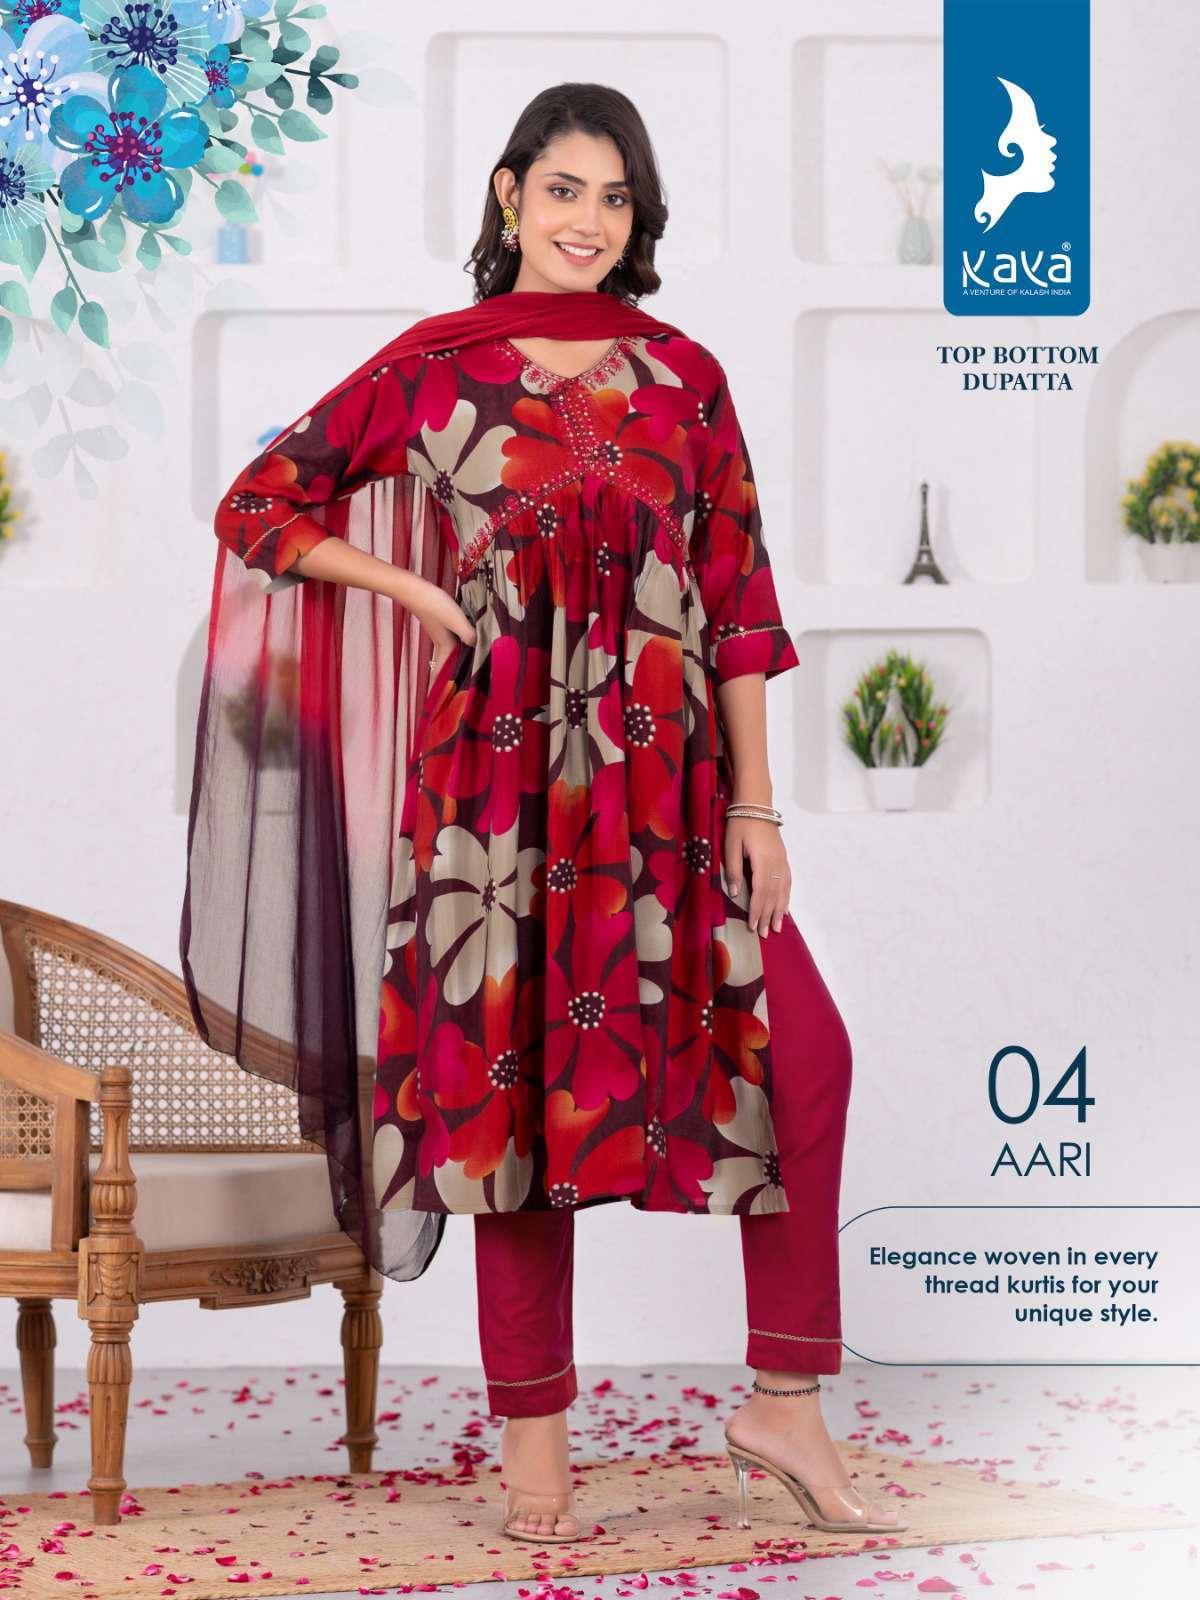 1702971842364463600 kaya aari readymade aaliya style dress new designs collection 2 2023 12 06 12 57 41